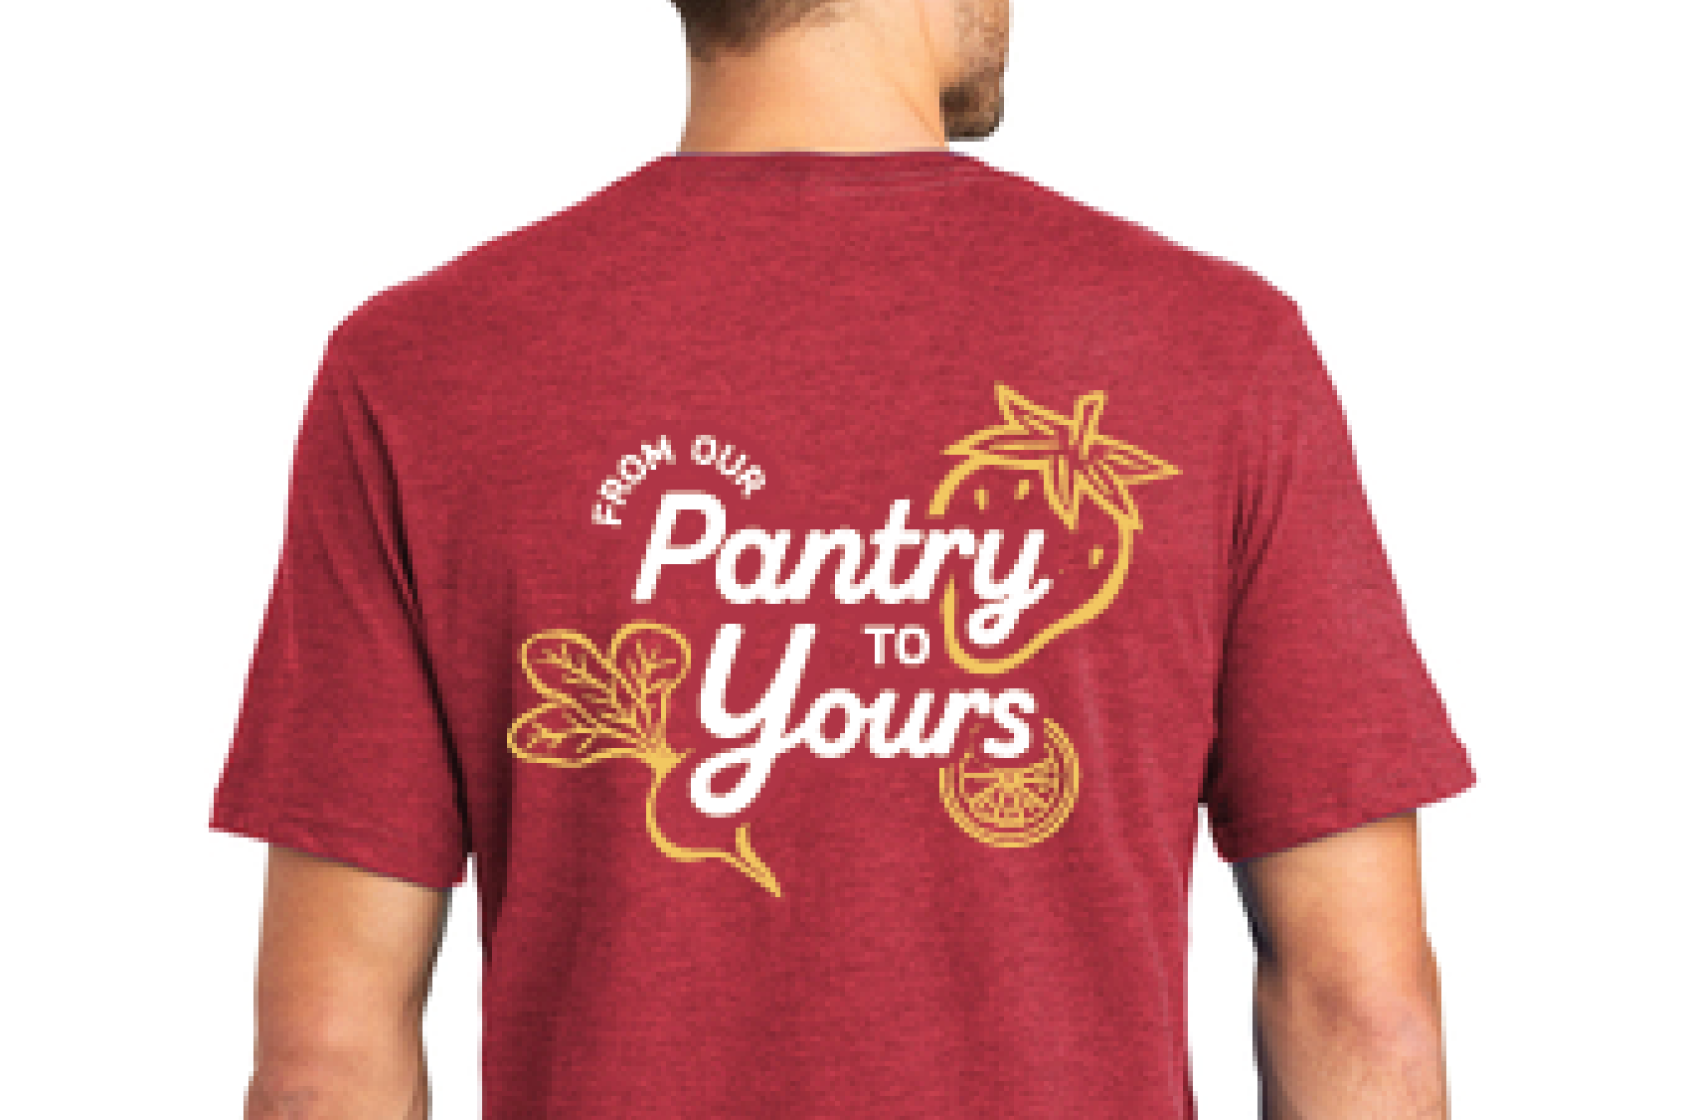 Pantry Shirt